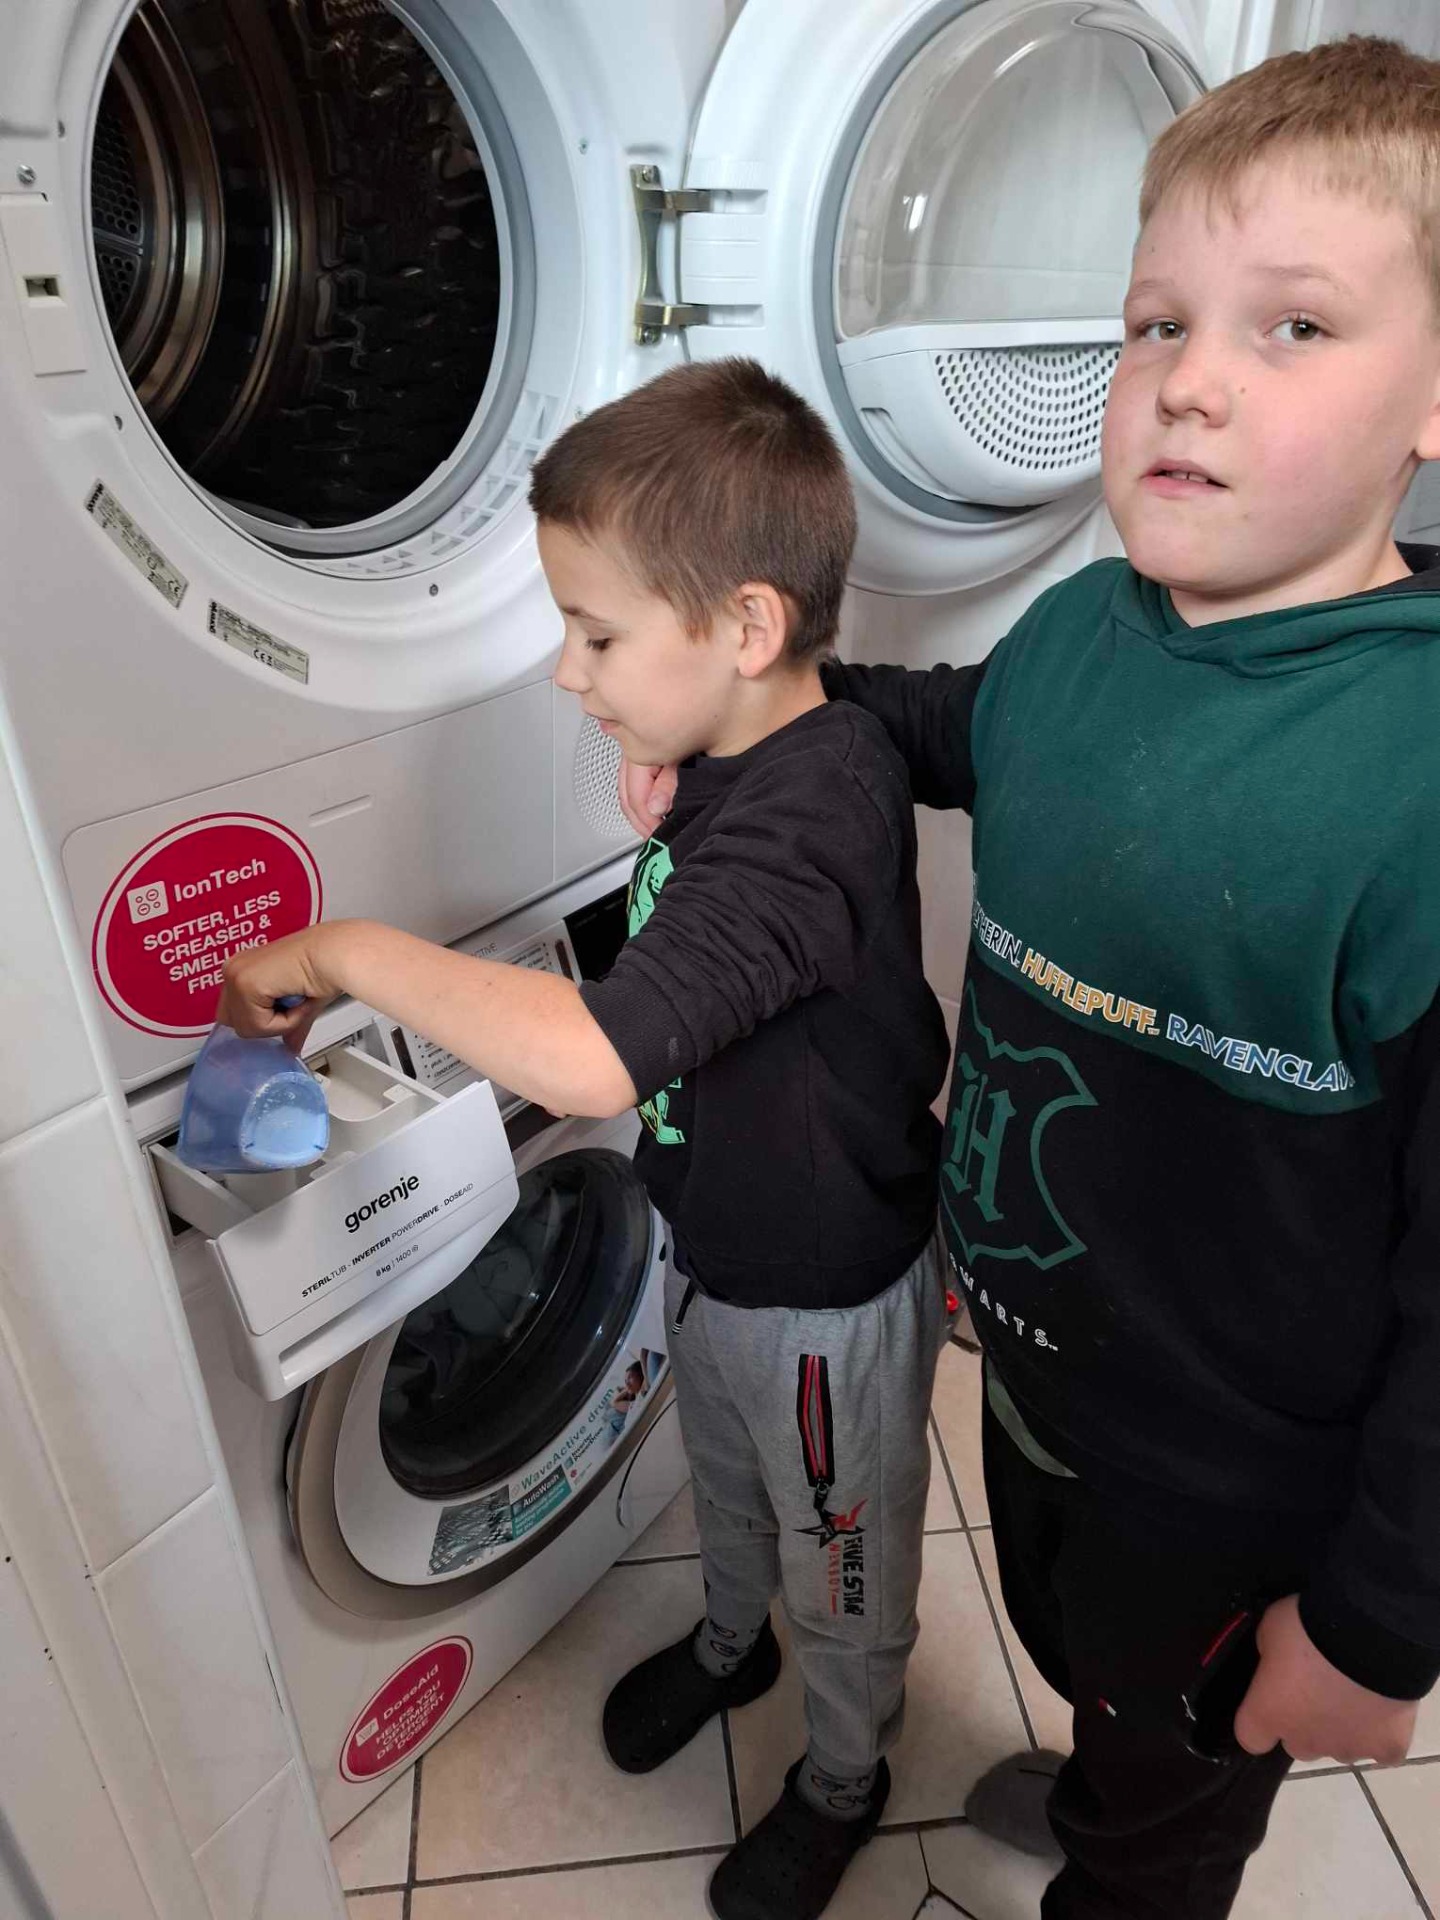 2 uczniów stoi obok pralki, jeden z nich wsypuje proszek do szufladki pralki